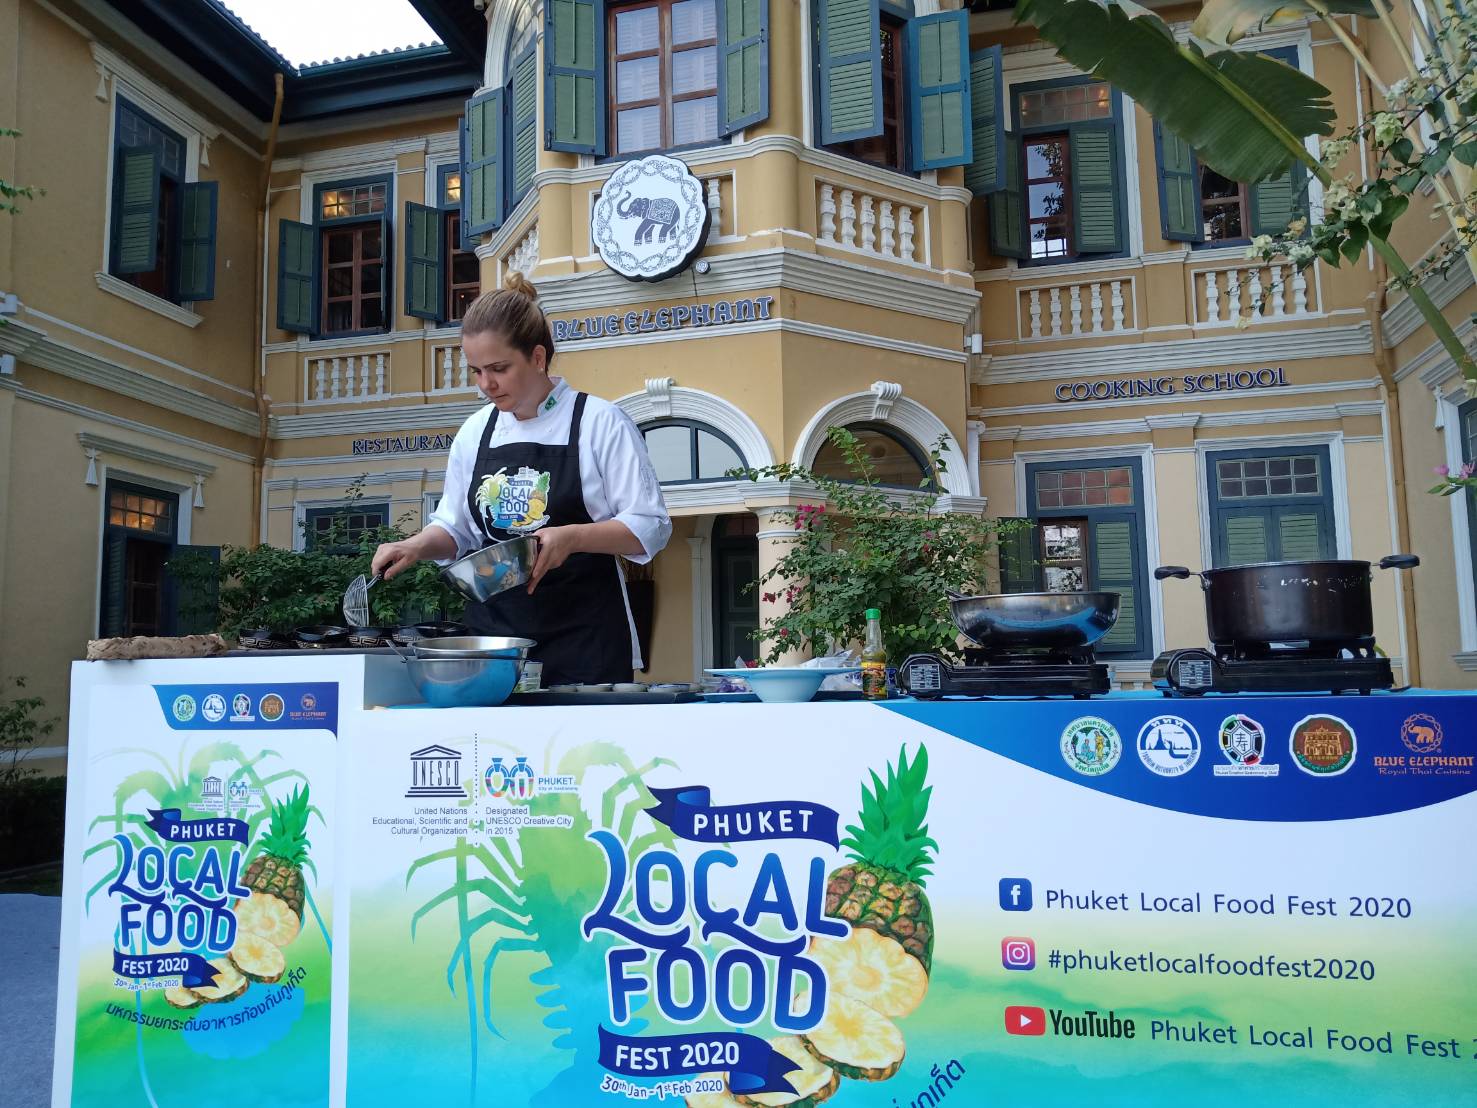 เริ่มแล้วมหกรรมยกระดับอาหารท้องถิ่นภูเก็ตสู่นานาชาติ (Phuket Local Food Fest) 